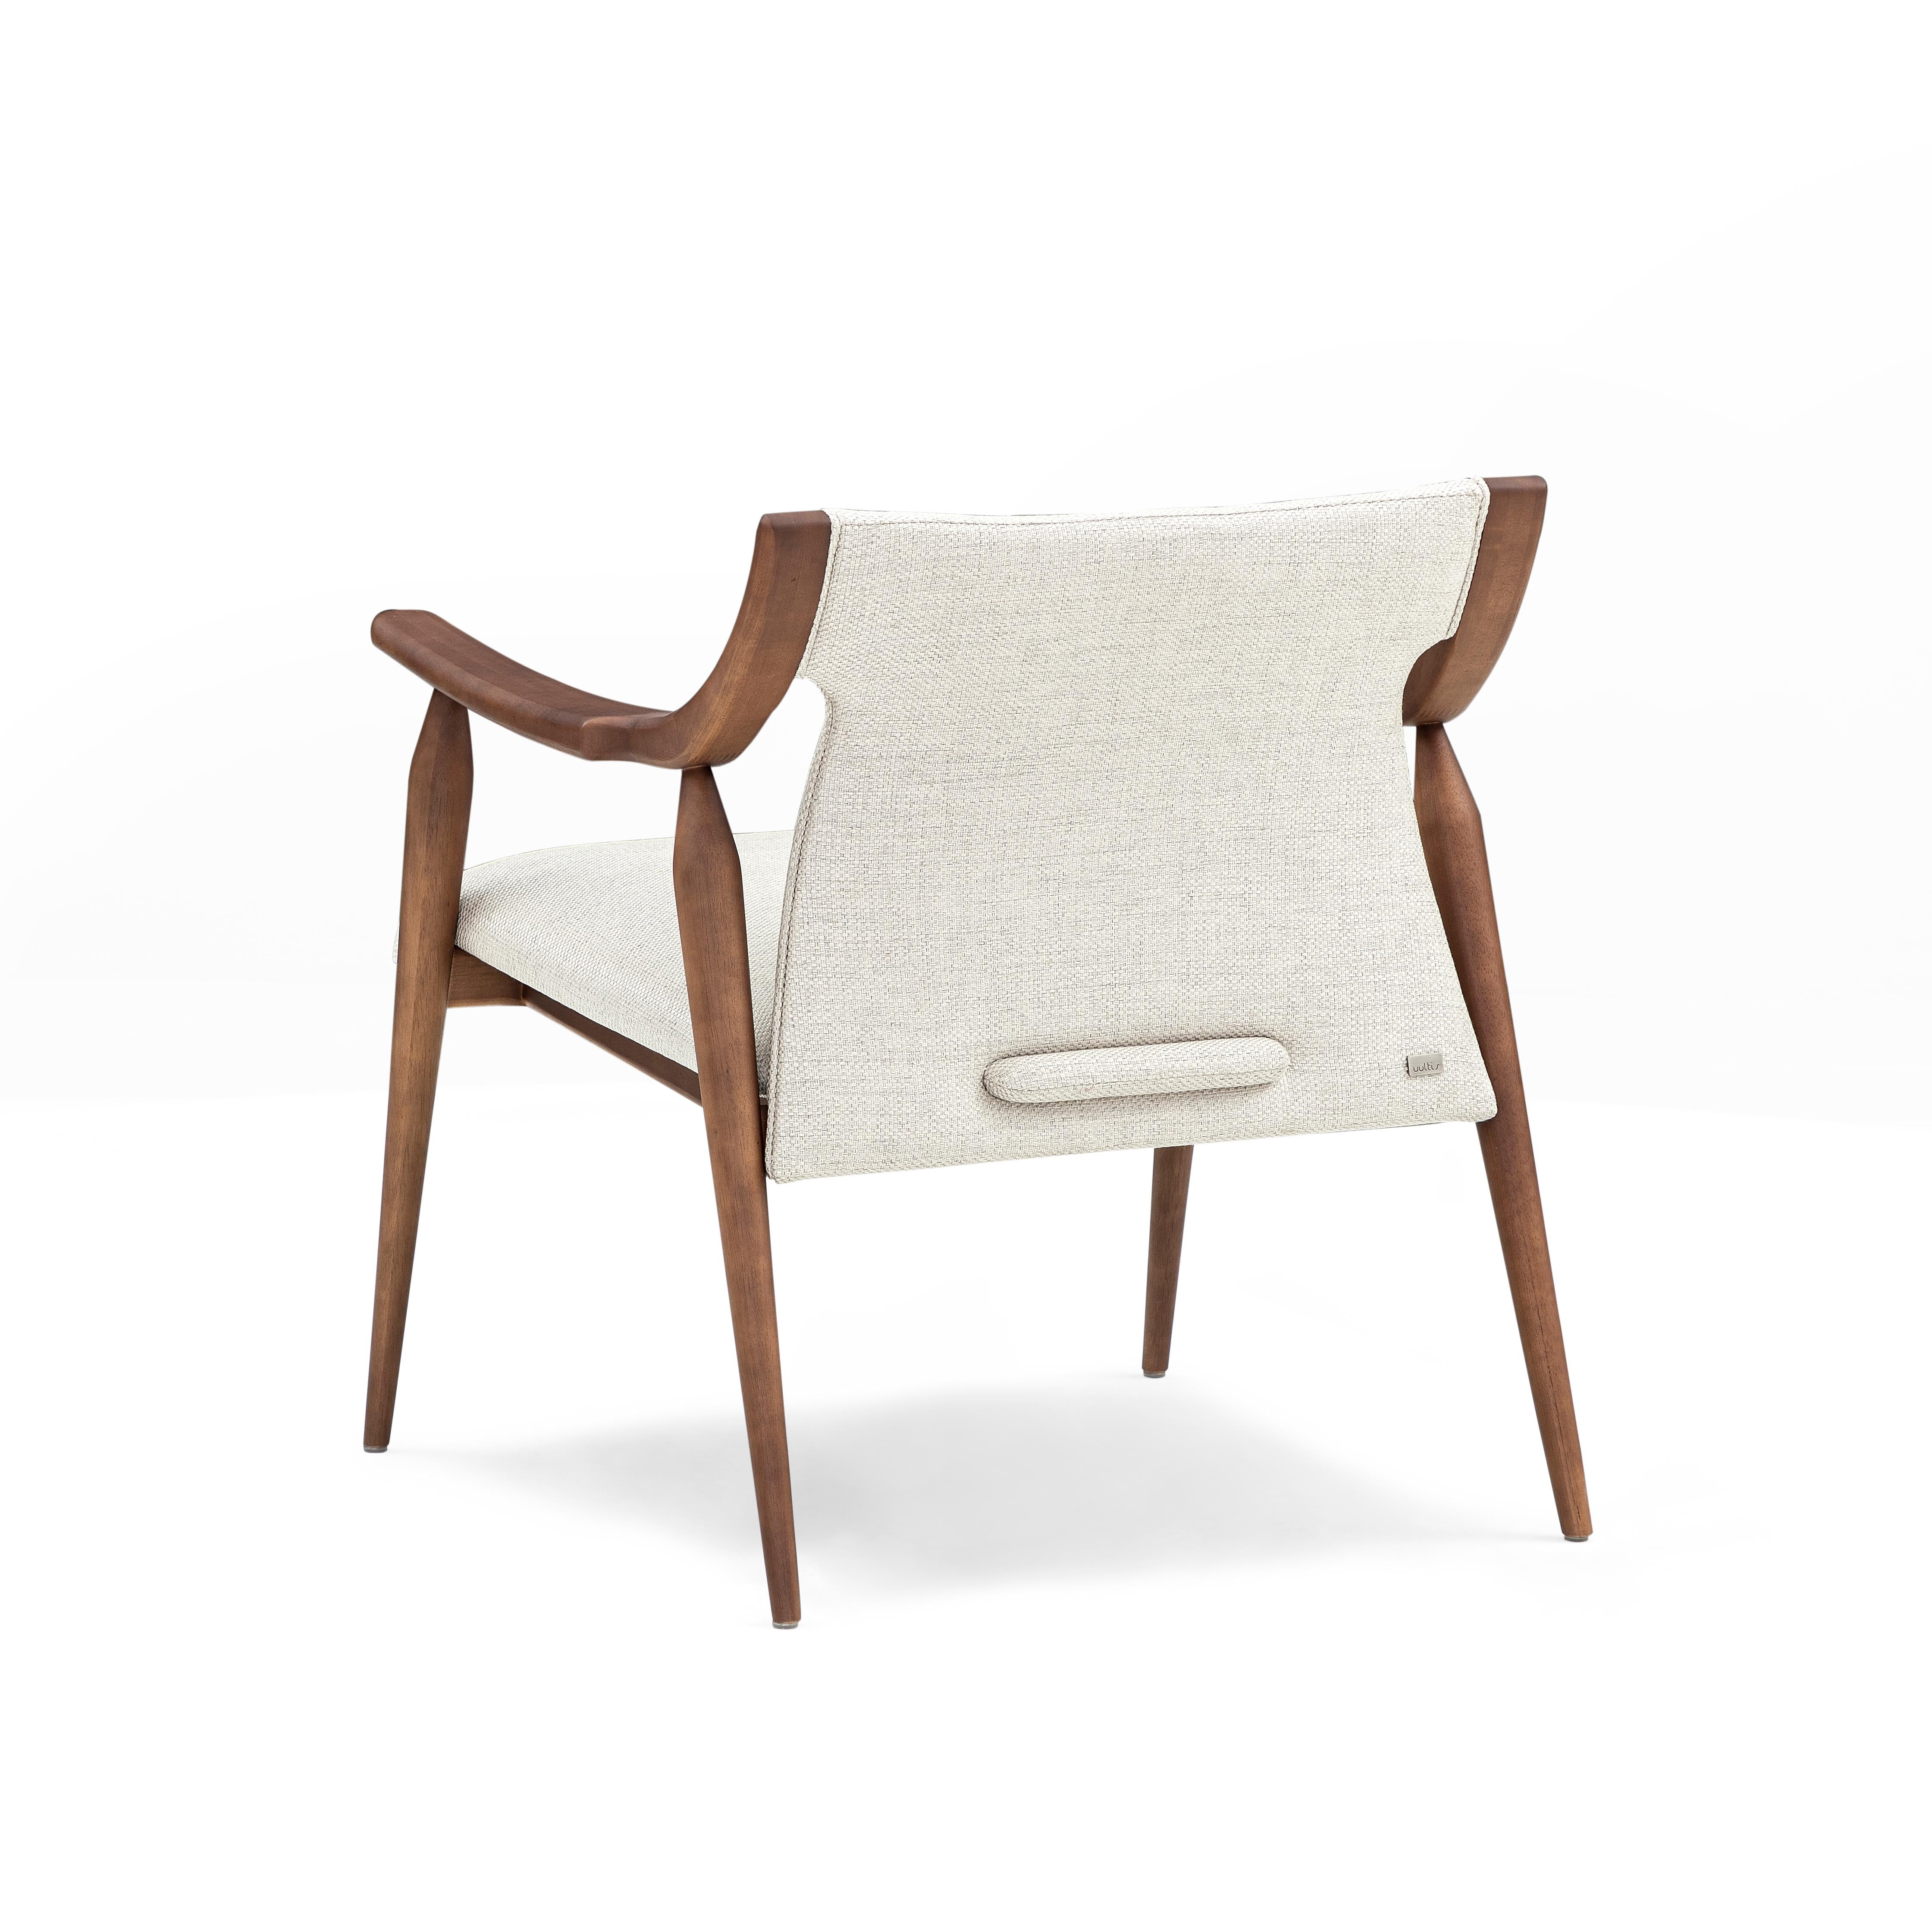 Le fauteuil Modern-Decor est un ajout accueillant à n'importe quelle pièce de votre décoration moderne avec ses bras incurvés et ses pieds en fuseau en finition noyer, et un beau tissu blanc cassé et doux pour les coussins. Cette chaise moderne